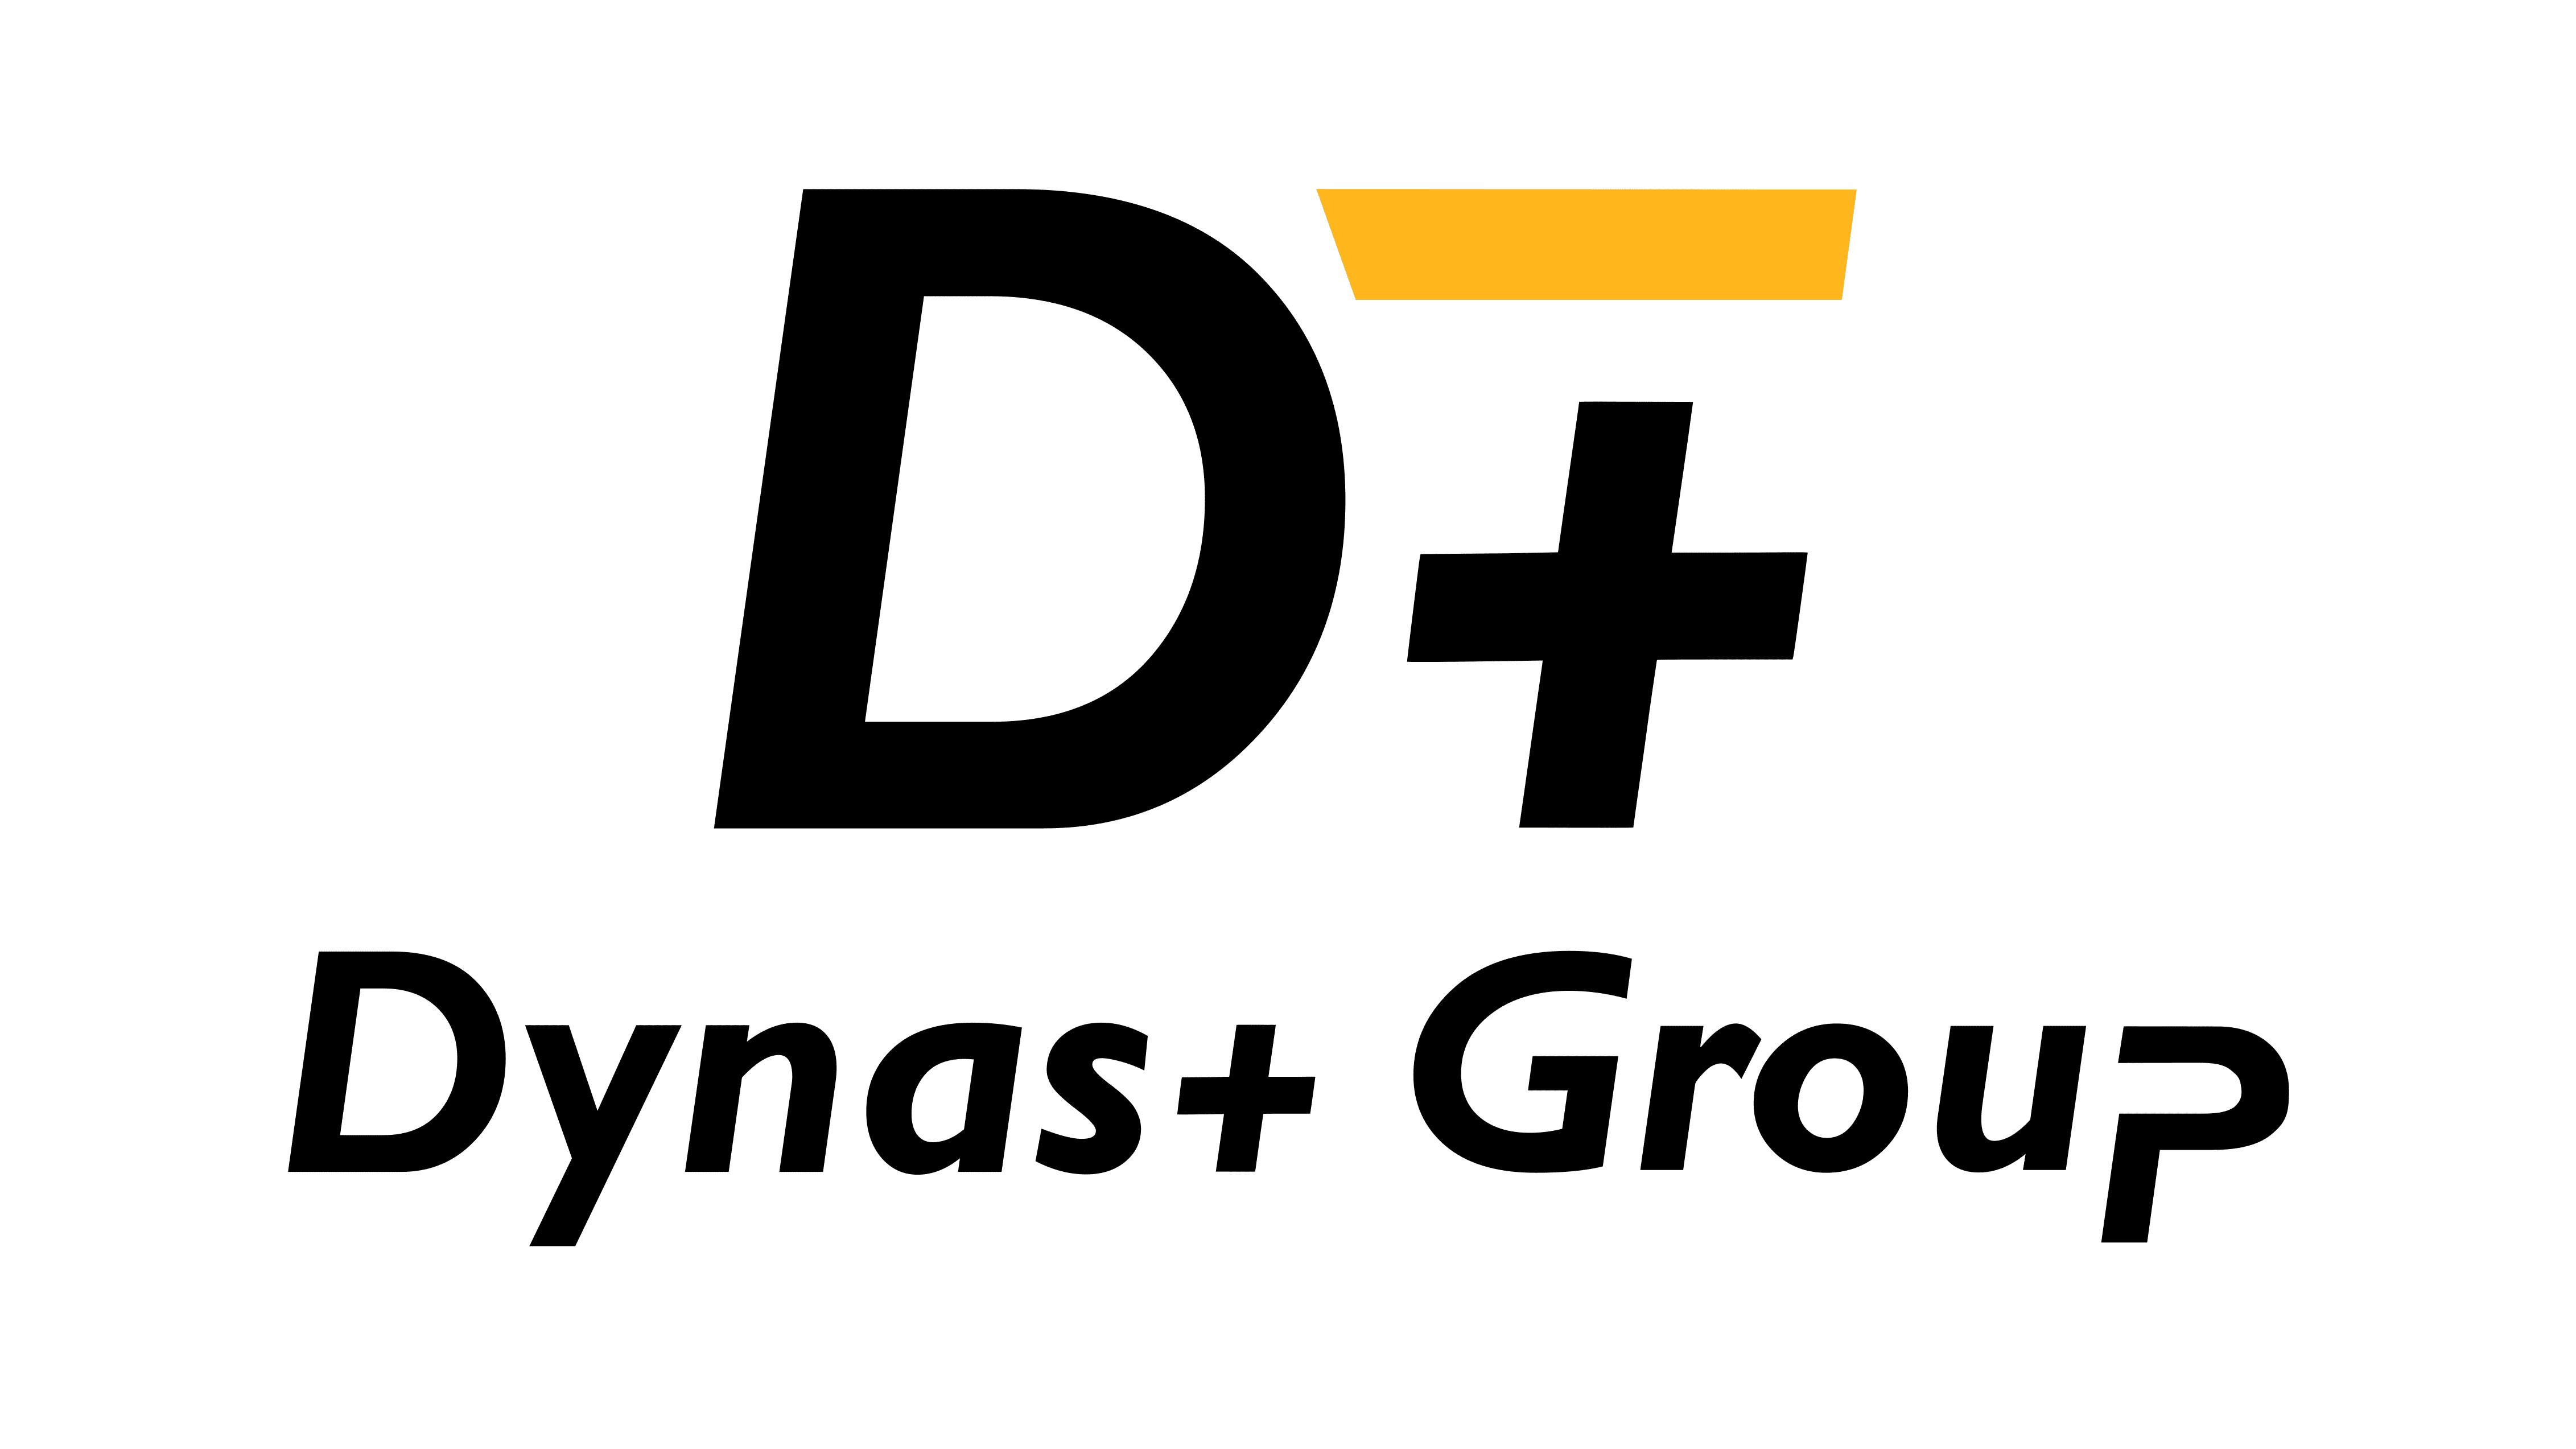 Dynas+ Group